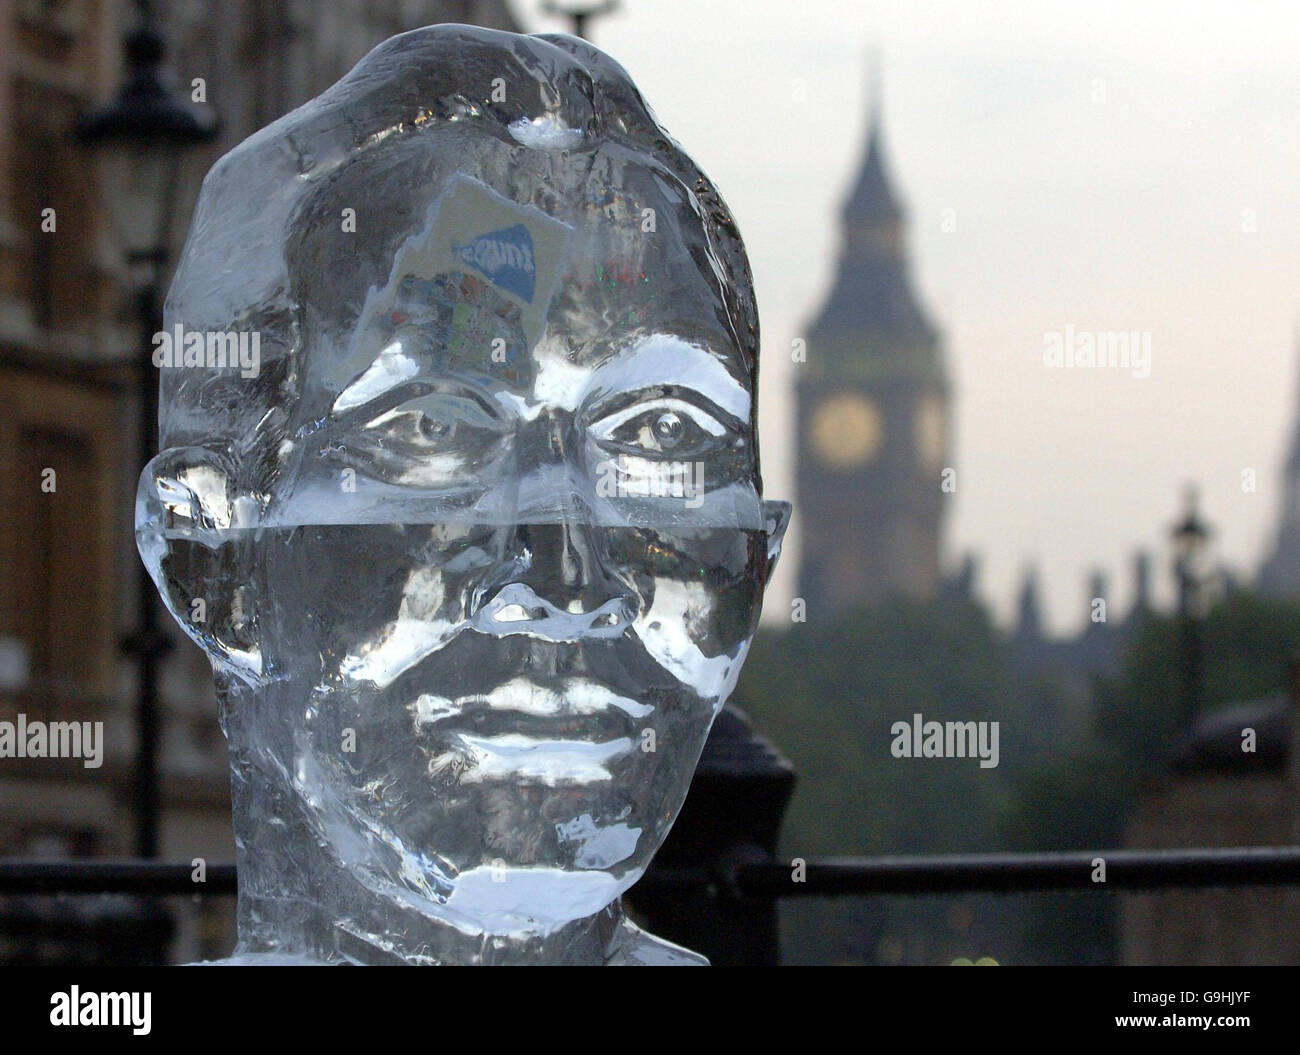 La coalition Stop Climate chaos (SCC) lance sa campagne i Count en dévoilant une sculpture sur glace de 4 mètres de haut de la tête du Premier ministre Tony Blair, enchâssée dans une première édition de son livre « I Count: Your STEP-by-STEP guide to Climate Bliss » à Trafalgar Square, dans le centre de Londres. Banque D'Images